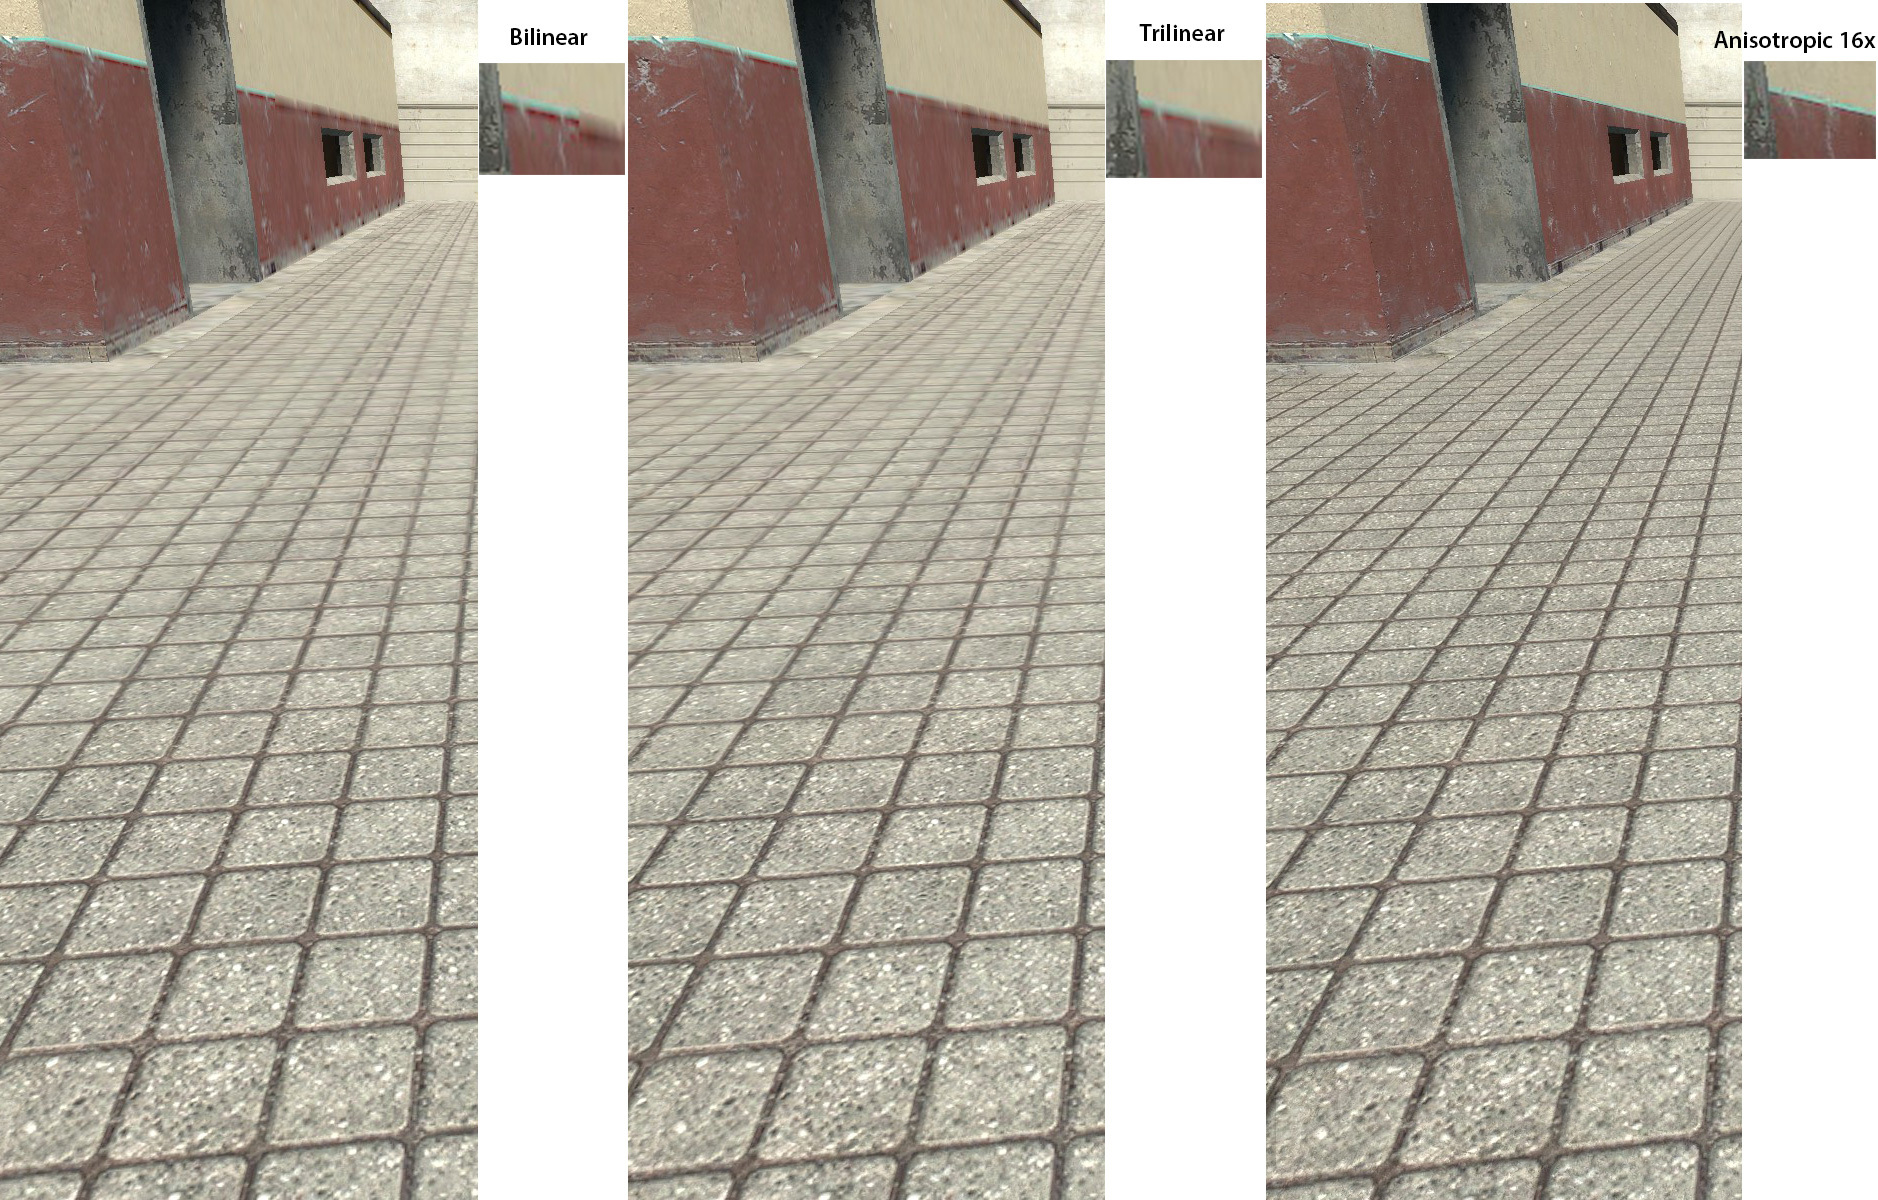 filtro anisotropico 16x Anisotropic filtering juego renderizado